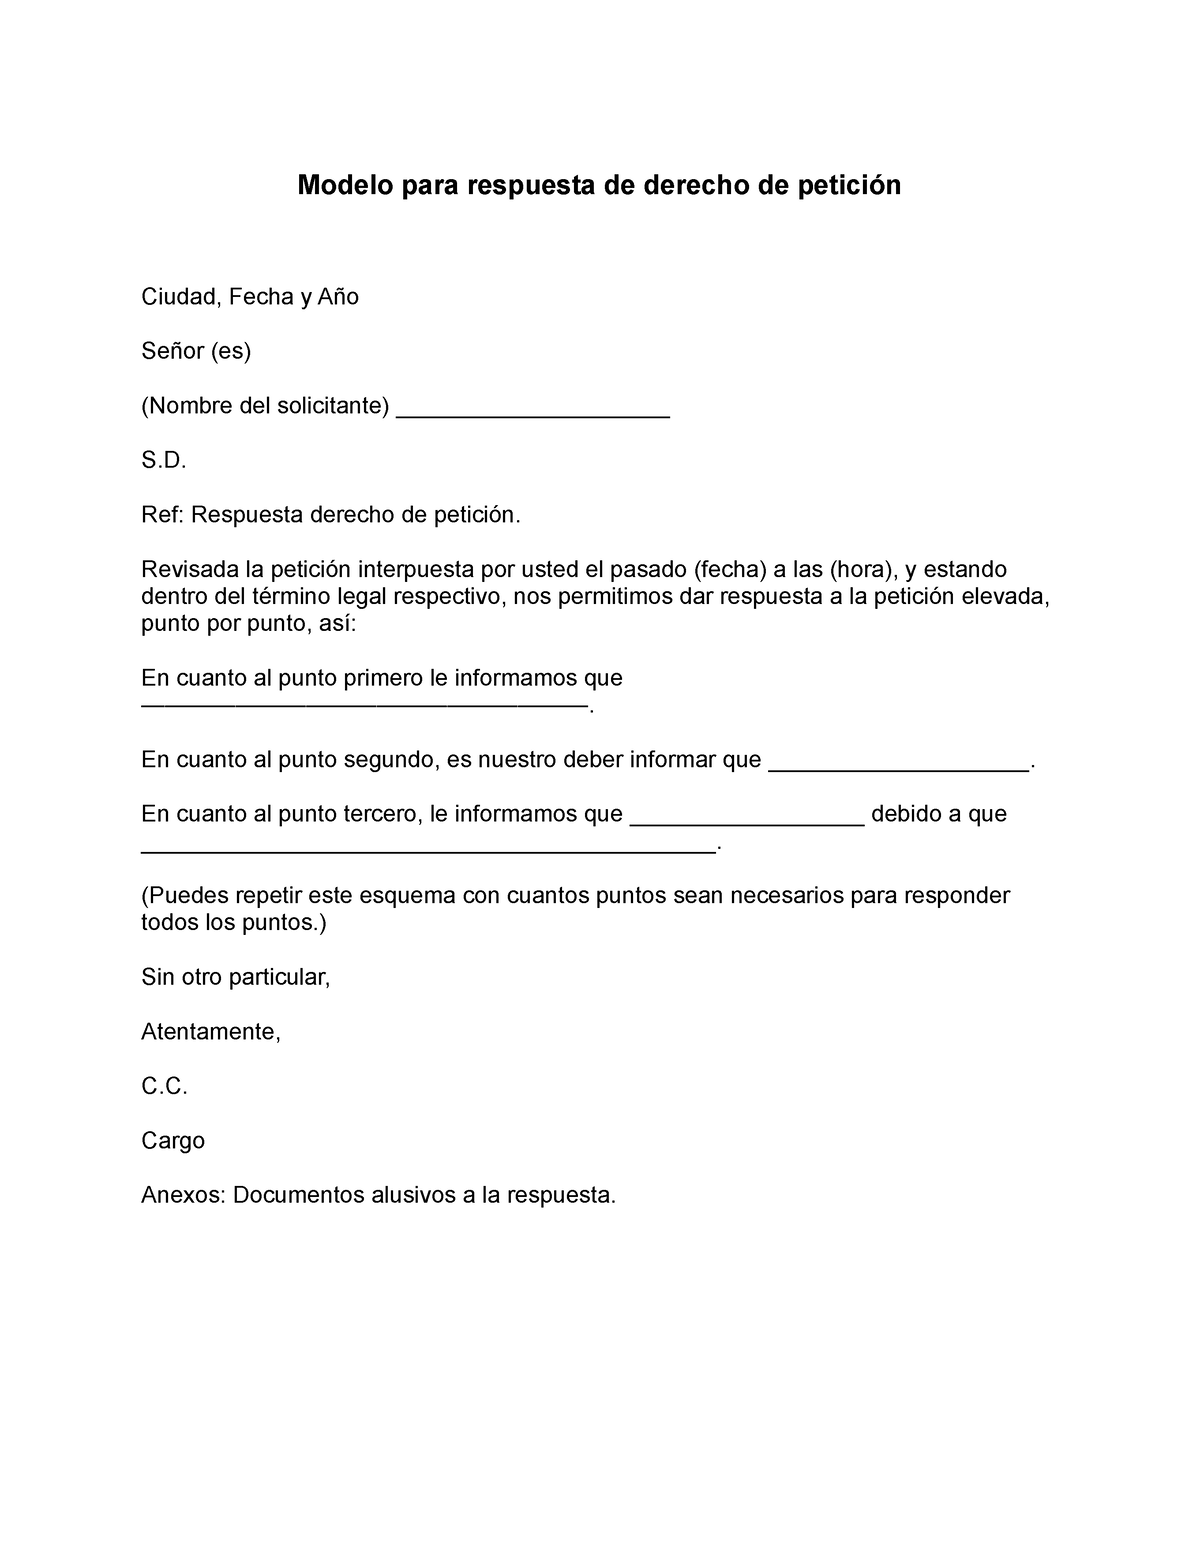 Modelo para respuesta de derecho de peticion - Modelo para respuesta de  derecho de petición Ciudad, - Studocu